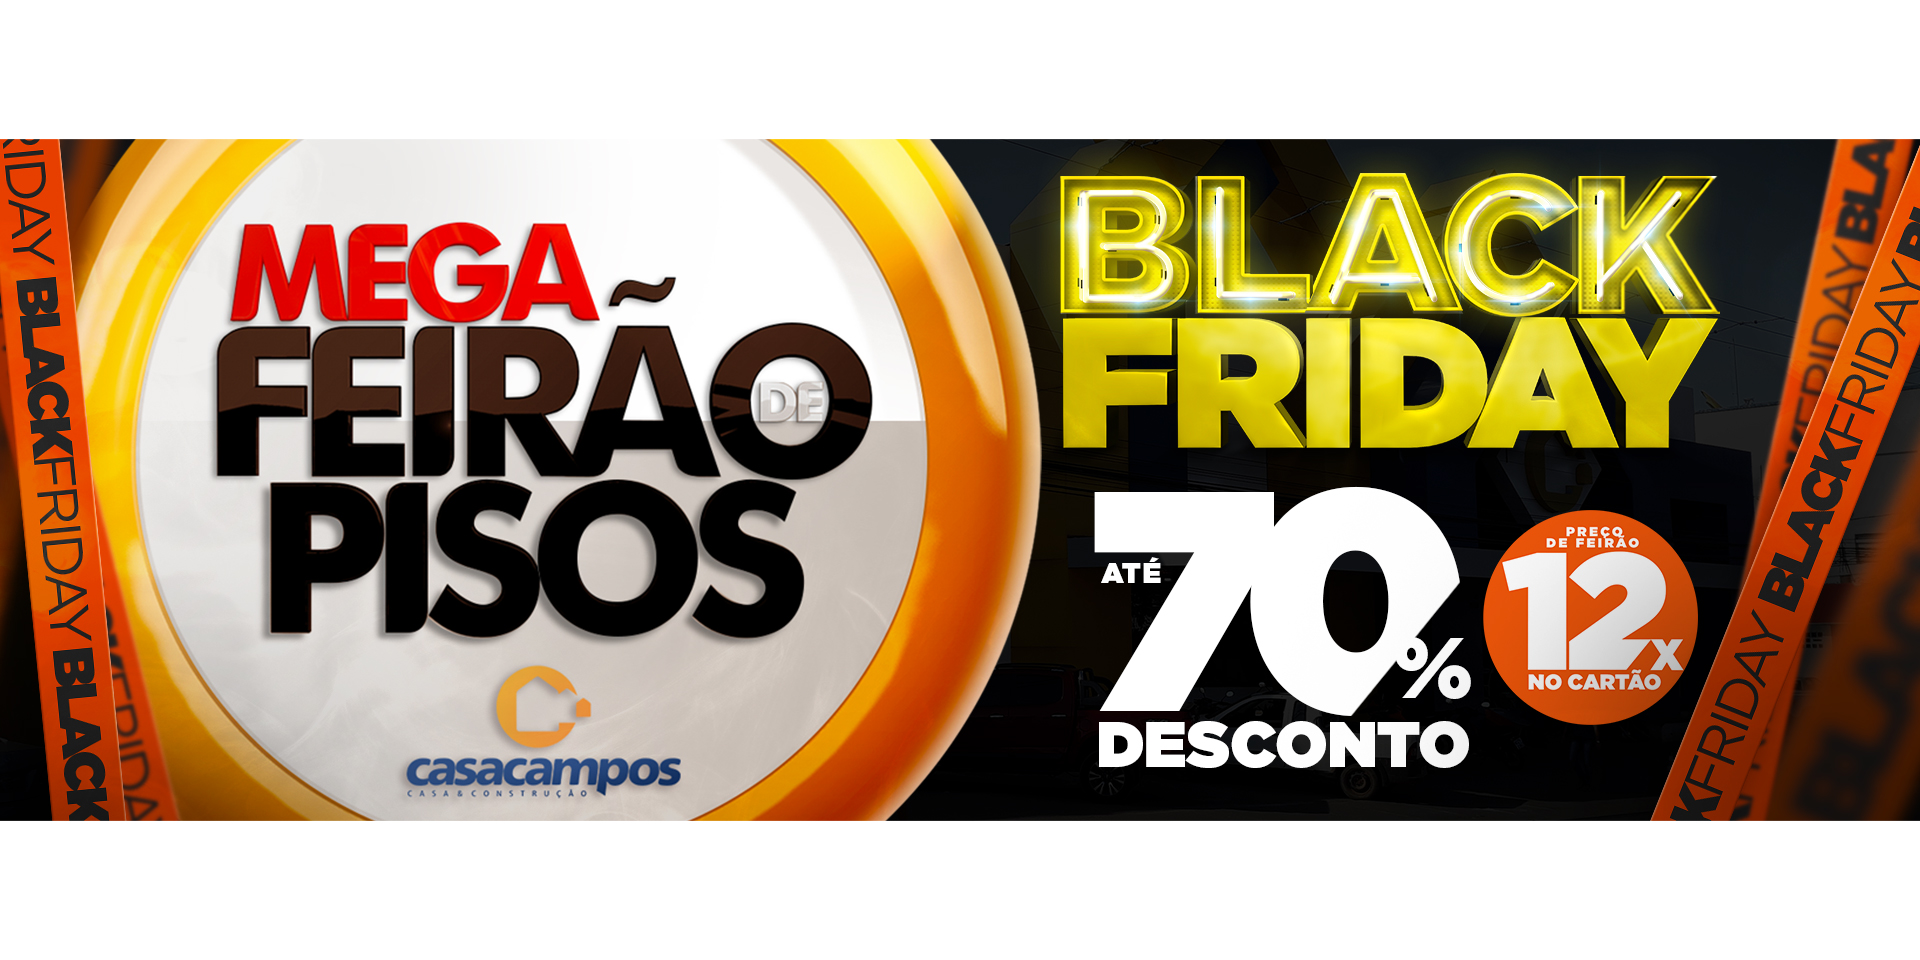 BLACK FRIDAY E MEGA FEIRÃO DE PISOS JUNTOS NA CASA CAMPOS